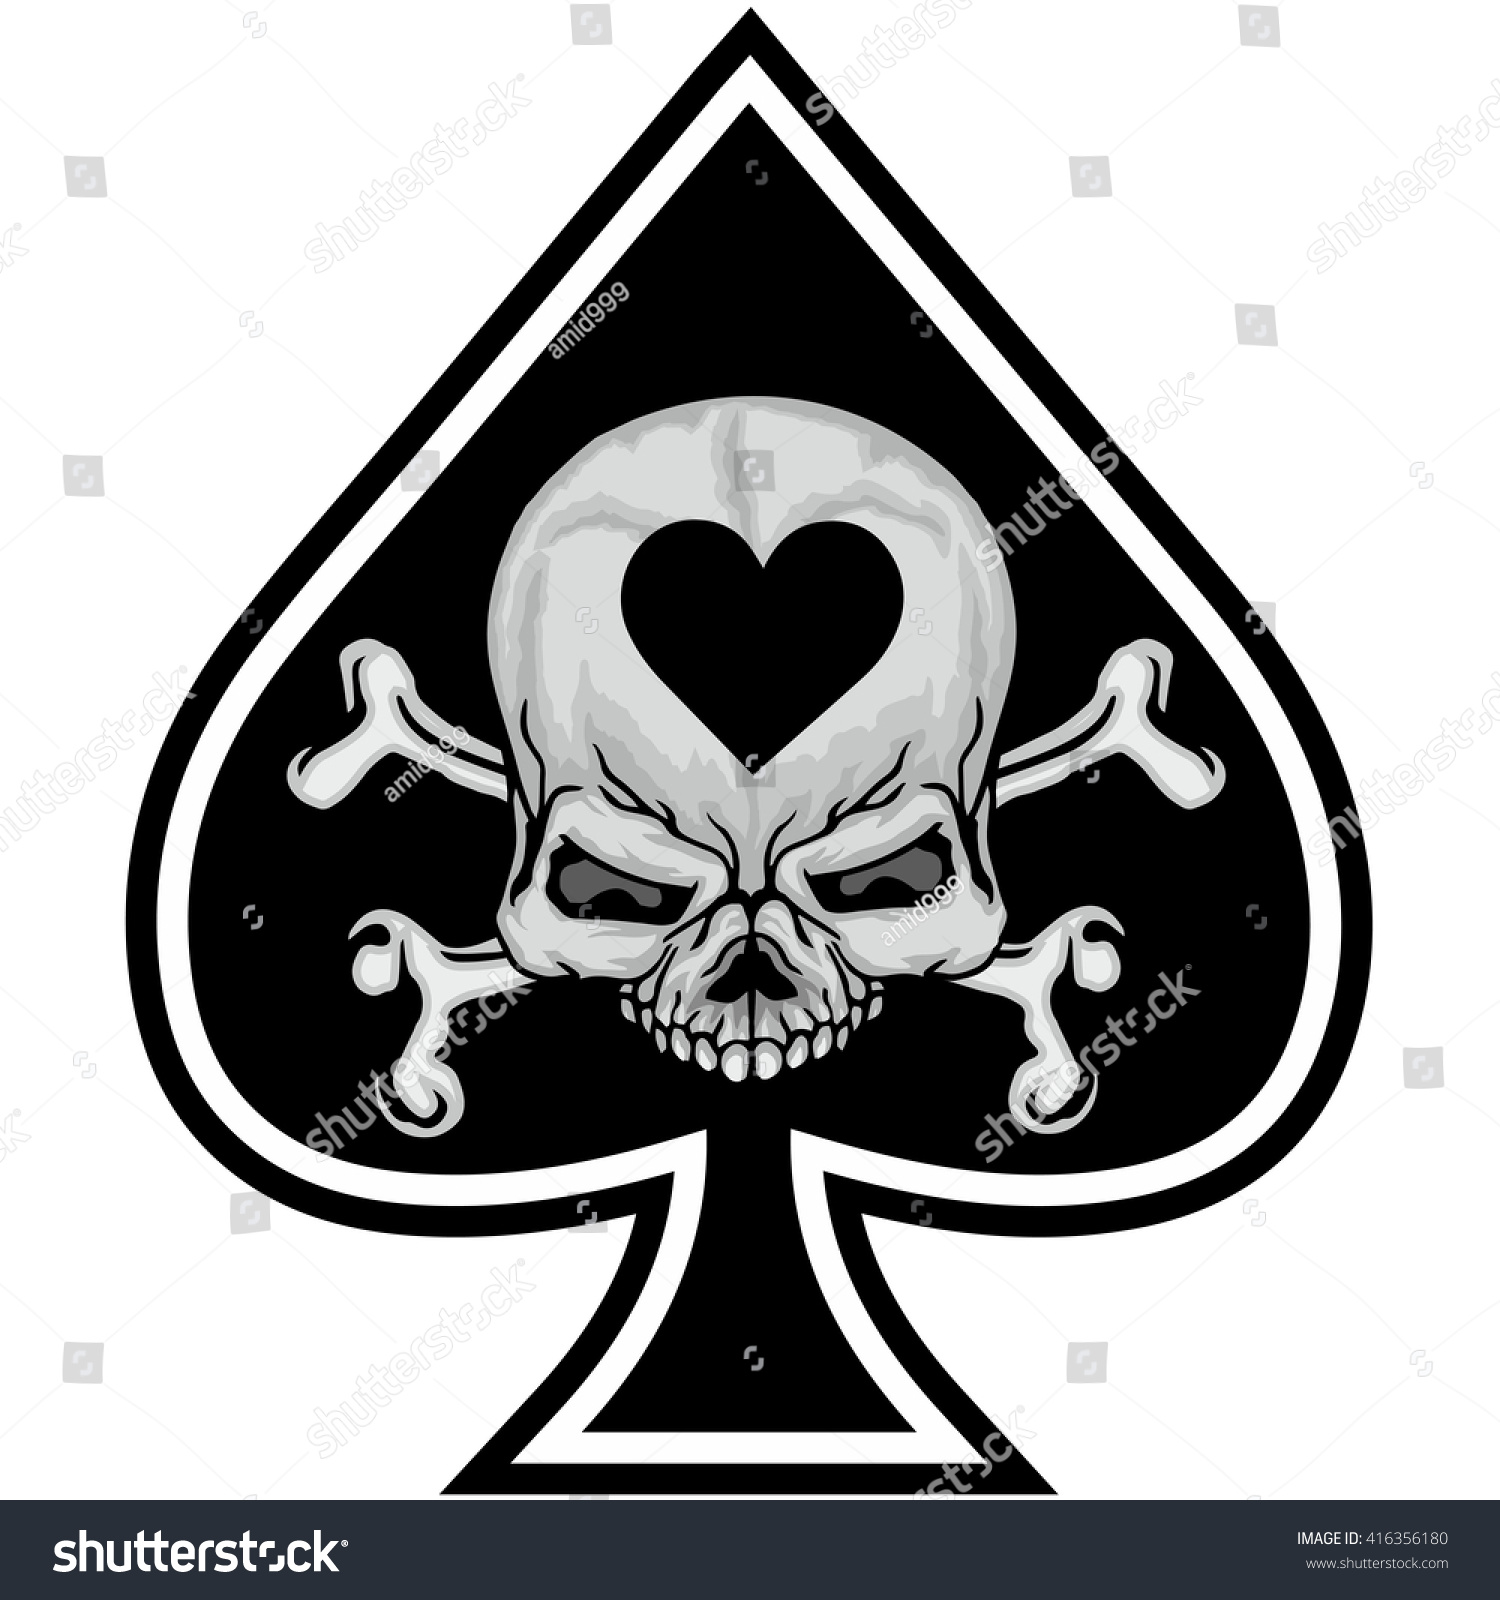 Ace Spades Skull Bones Stock Vector 416356180 - Shutterstock